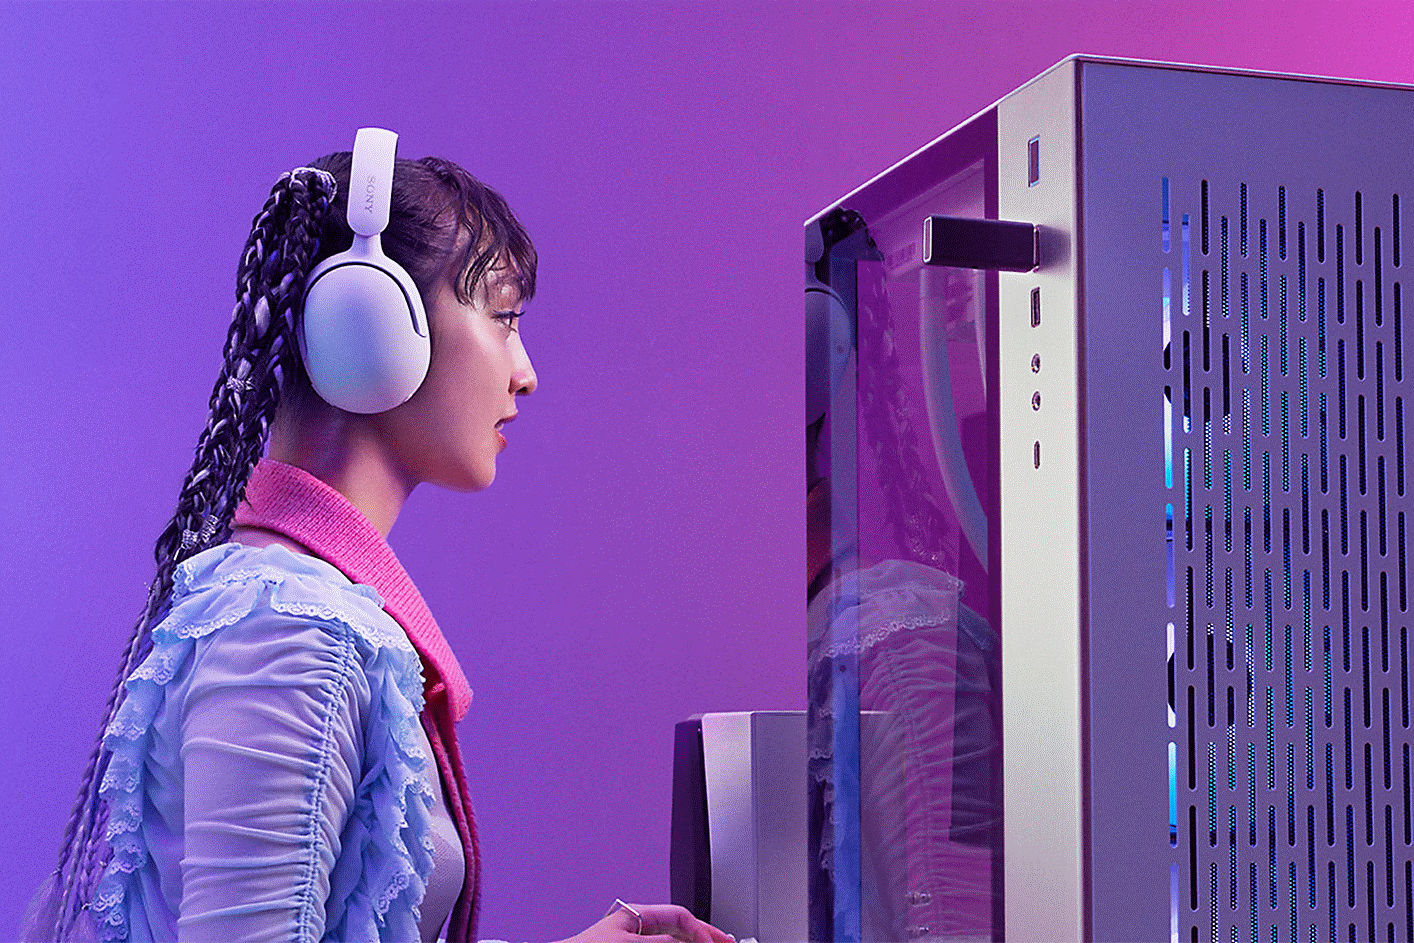 Una gamer sentada frente a la computadora con unos audífonos INZONE H5